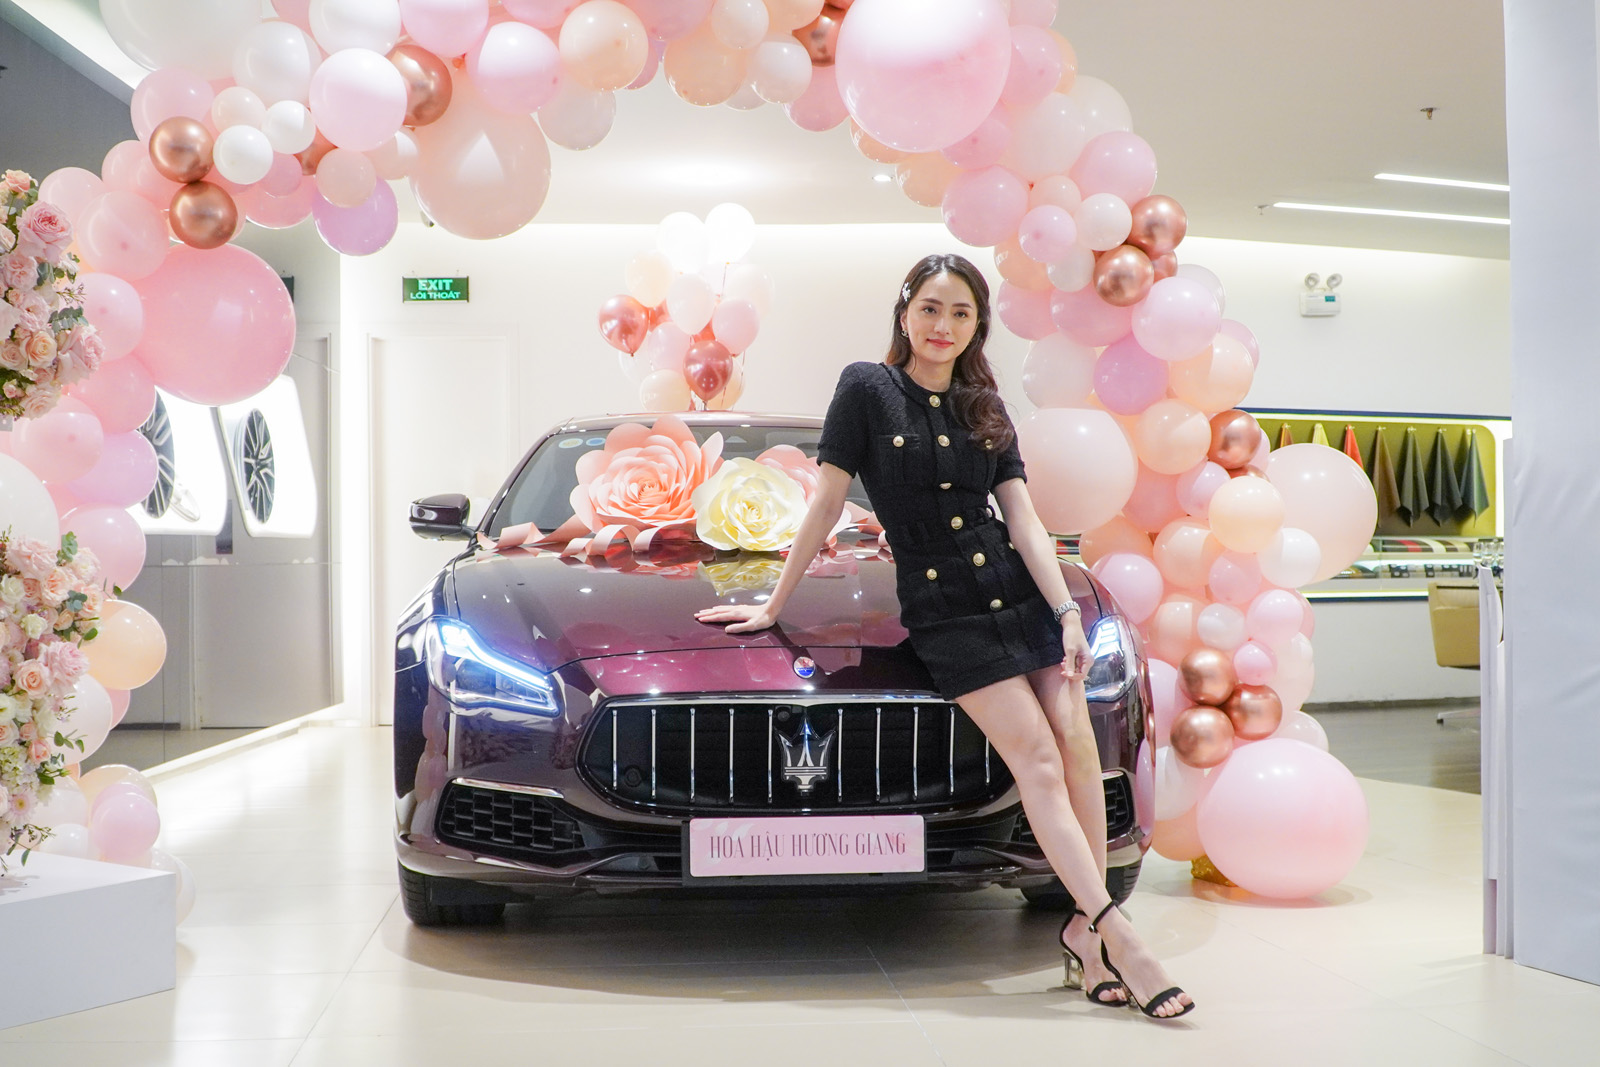 Hoa hậu Hương Giang mua Maserati Quattroporte hơn 8 tỷ đồng, tiết lộ cách chọn xe đặc trưng của phụ nữ - Ảnh 1.